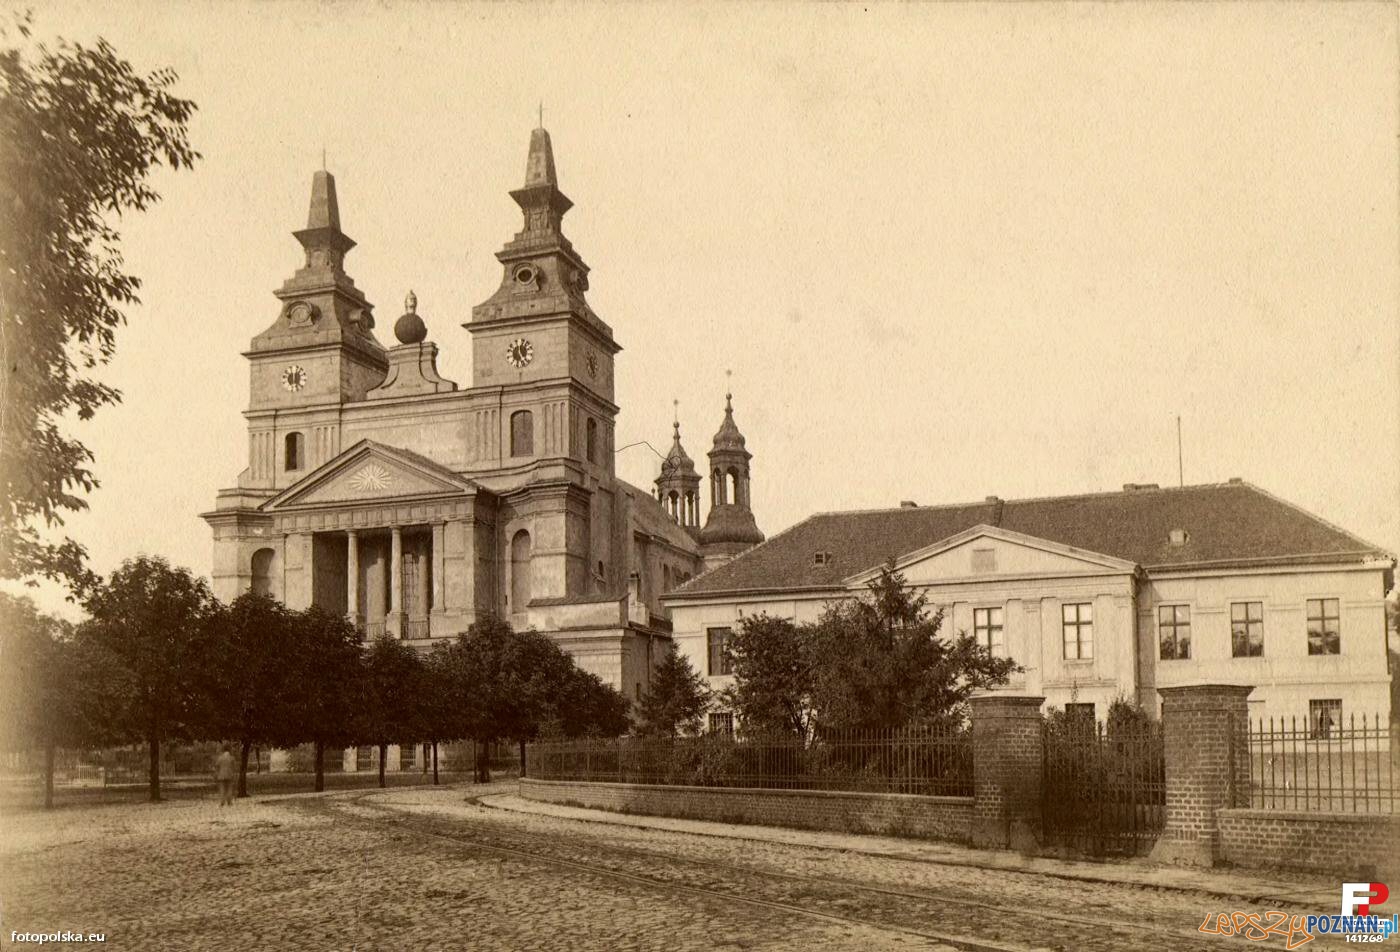 Katedra w Poznaniu - lata 1886-1888 Foto: fotopolska.eu